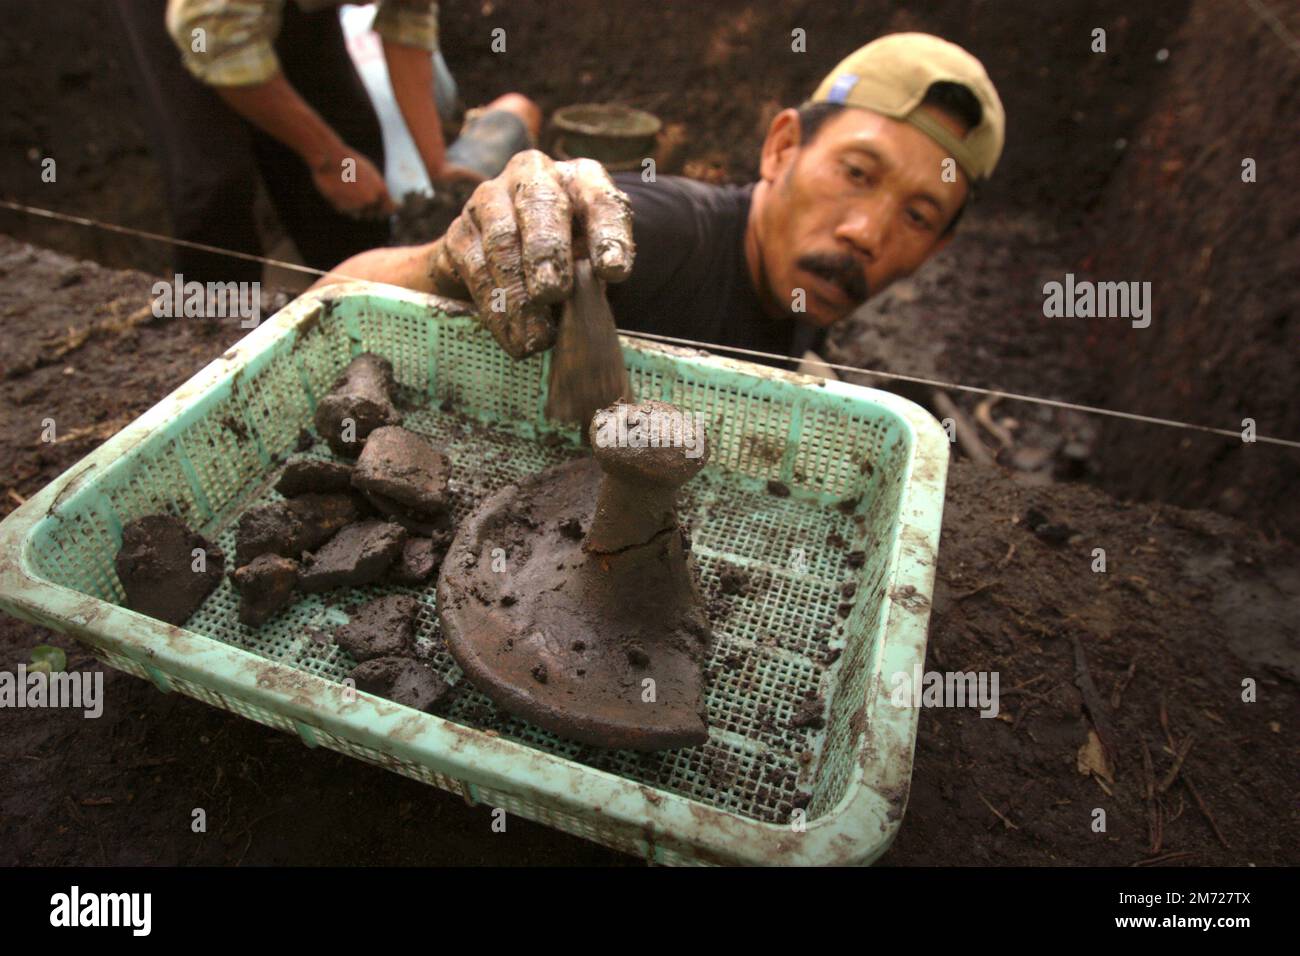 Ein Arbeiter, der während der Ausgrabung einer prähistorischen Grabstätte, die von der indonesischen National Archäology Research in Tempuran, Karawang, West Java, Indonesien durchgeführt wurde, Keramikfragmente sammelt. Stockfoto